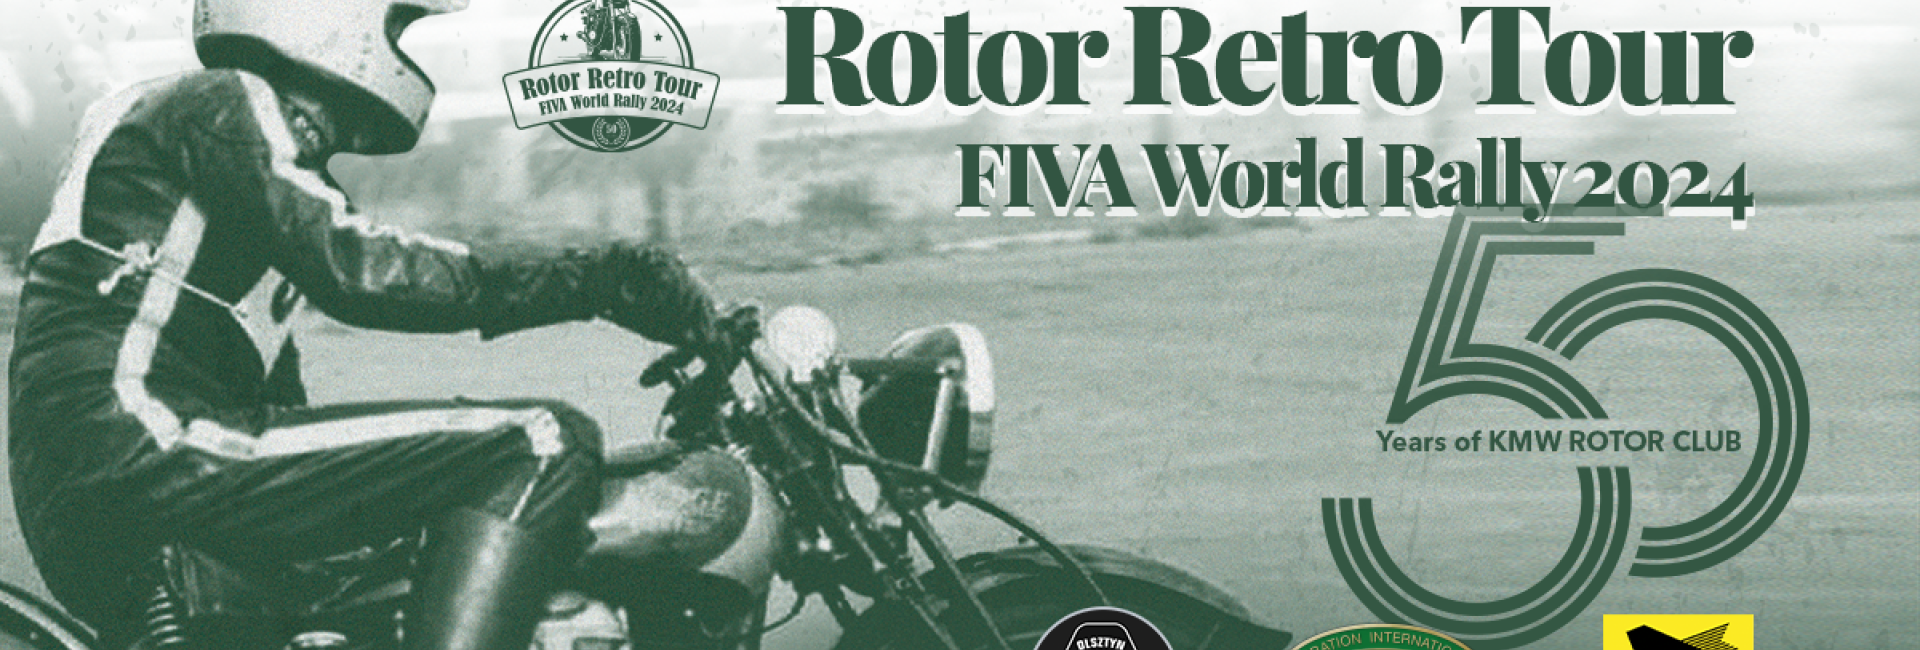 Rotor Retro Tour FIVA World Rally 2024 Poland